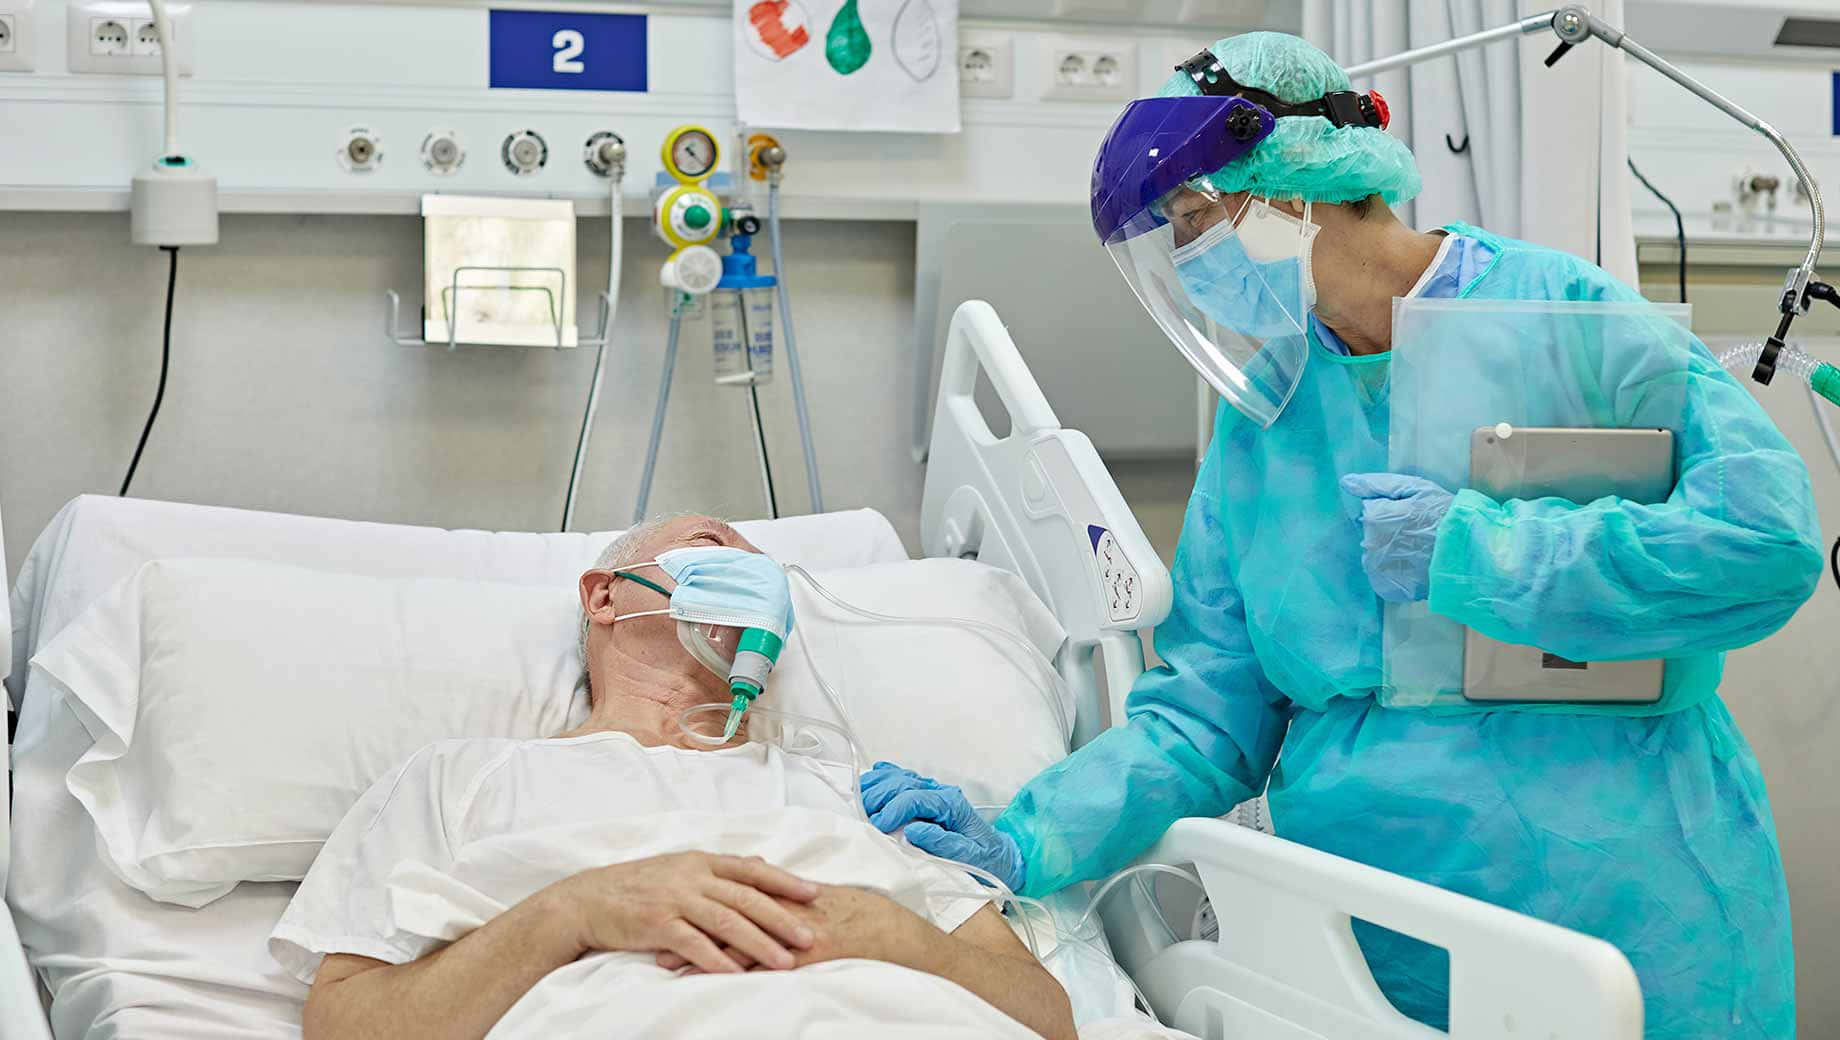 Enkvinde Med En Blå Maske Ligger I En Hospitals Seng.